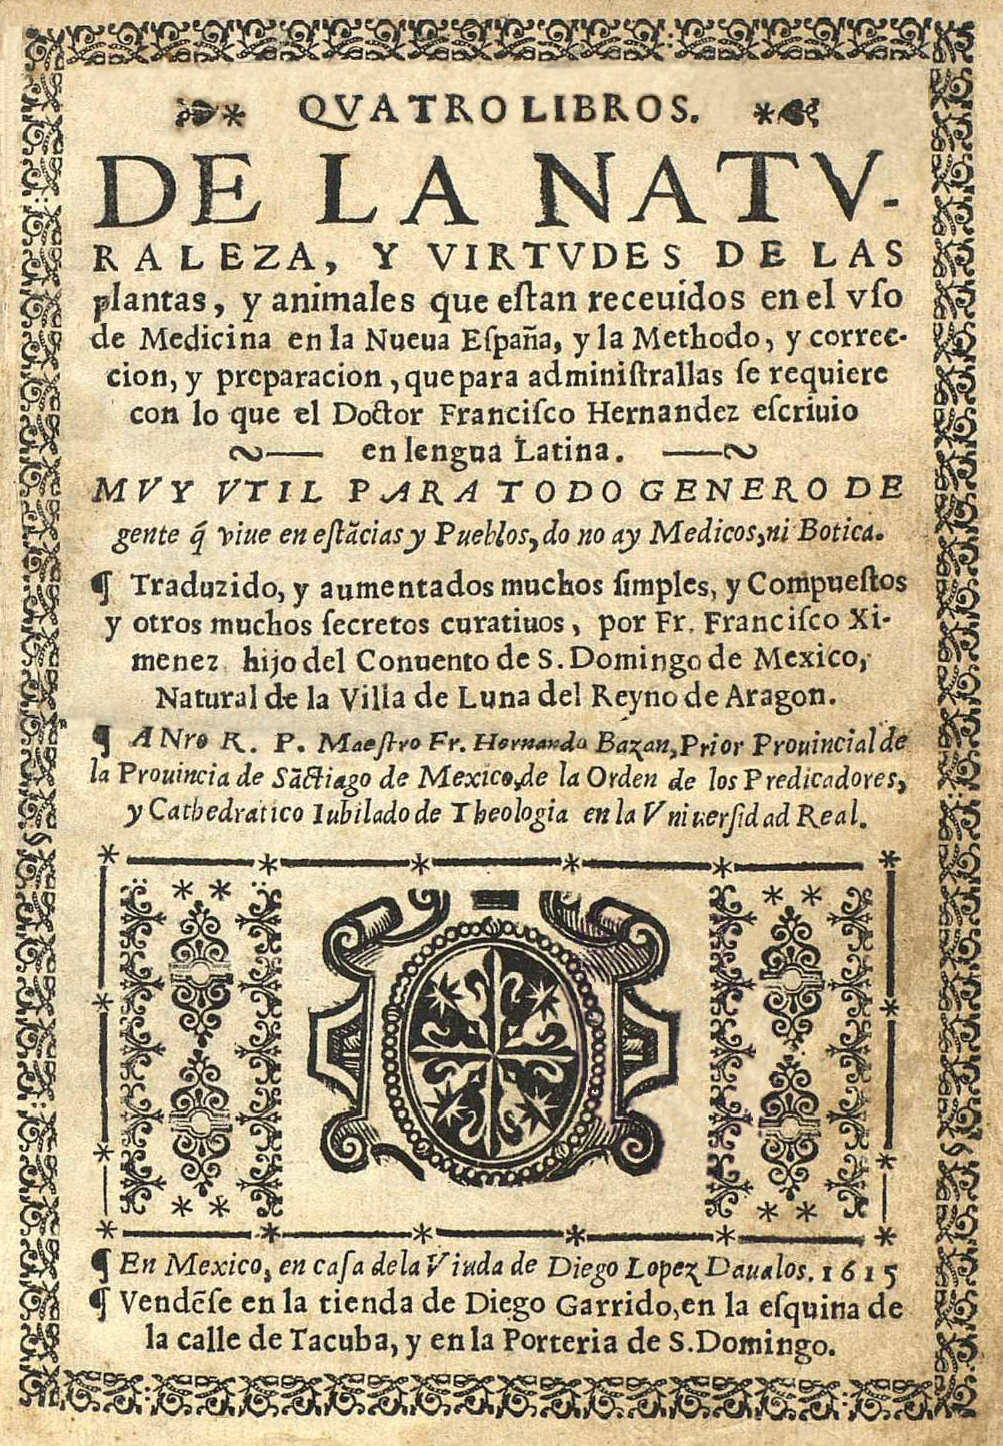 Francisco_Hernández_(1615)_Quatro_libros_de_la_naturaleza_y_virtudes_de_las_plantas_y_animales